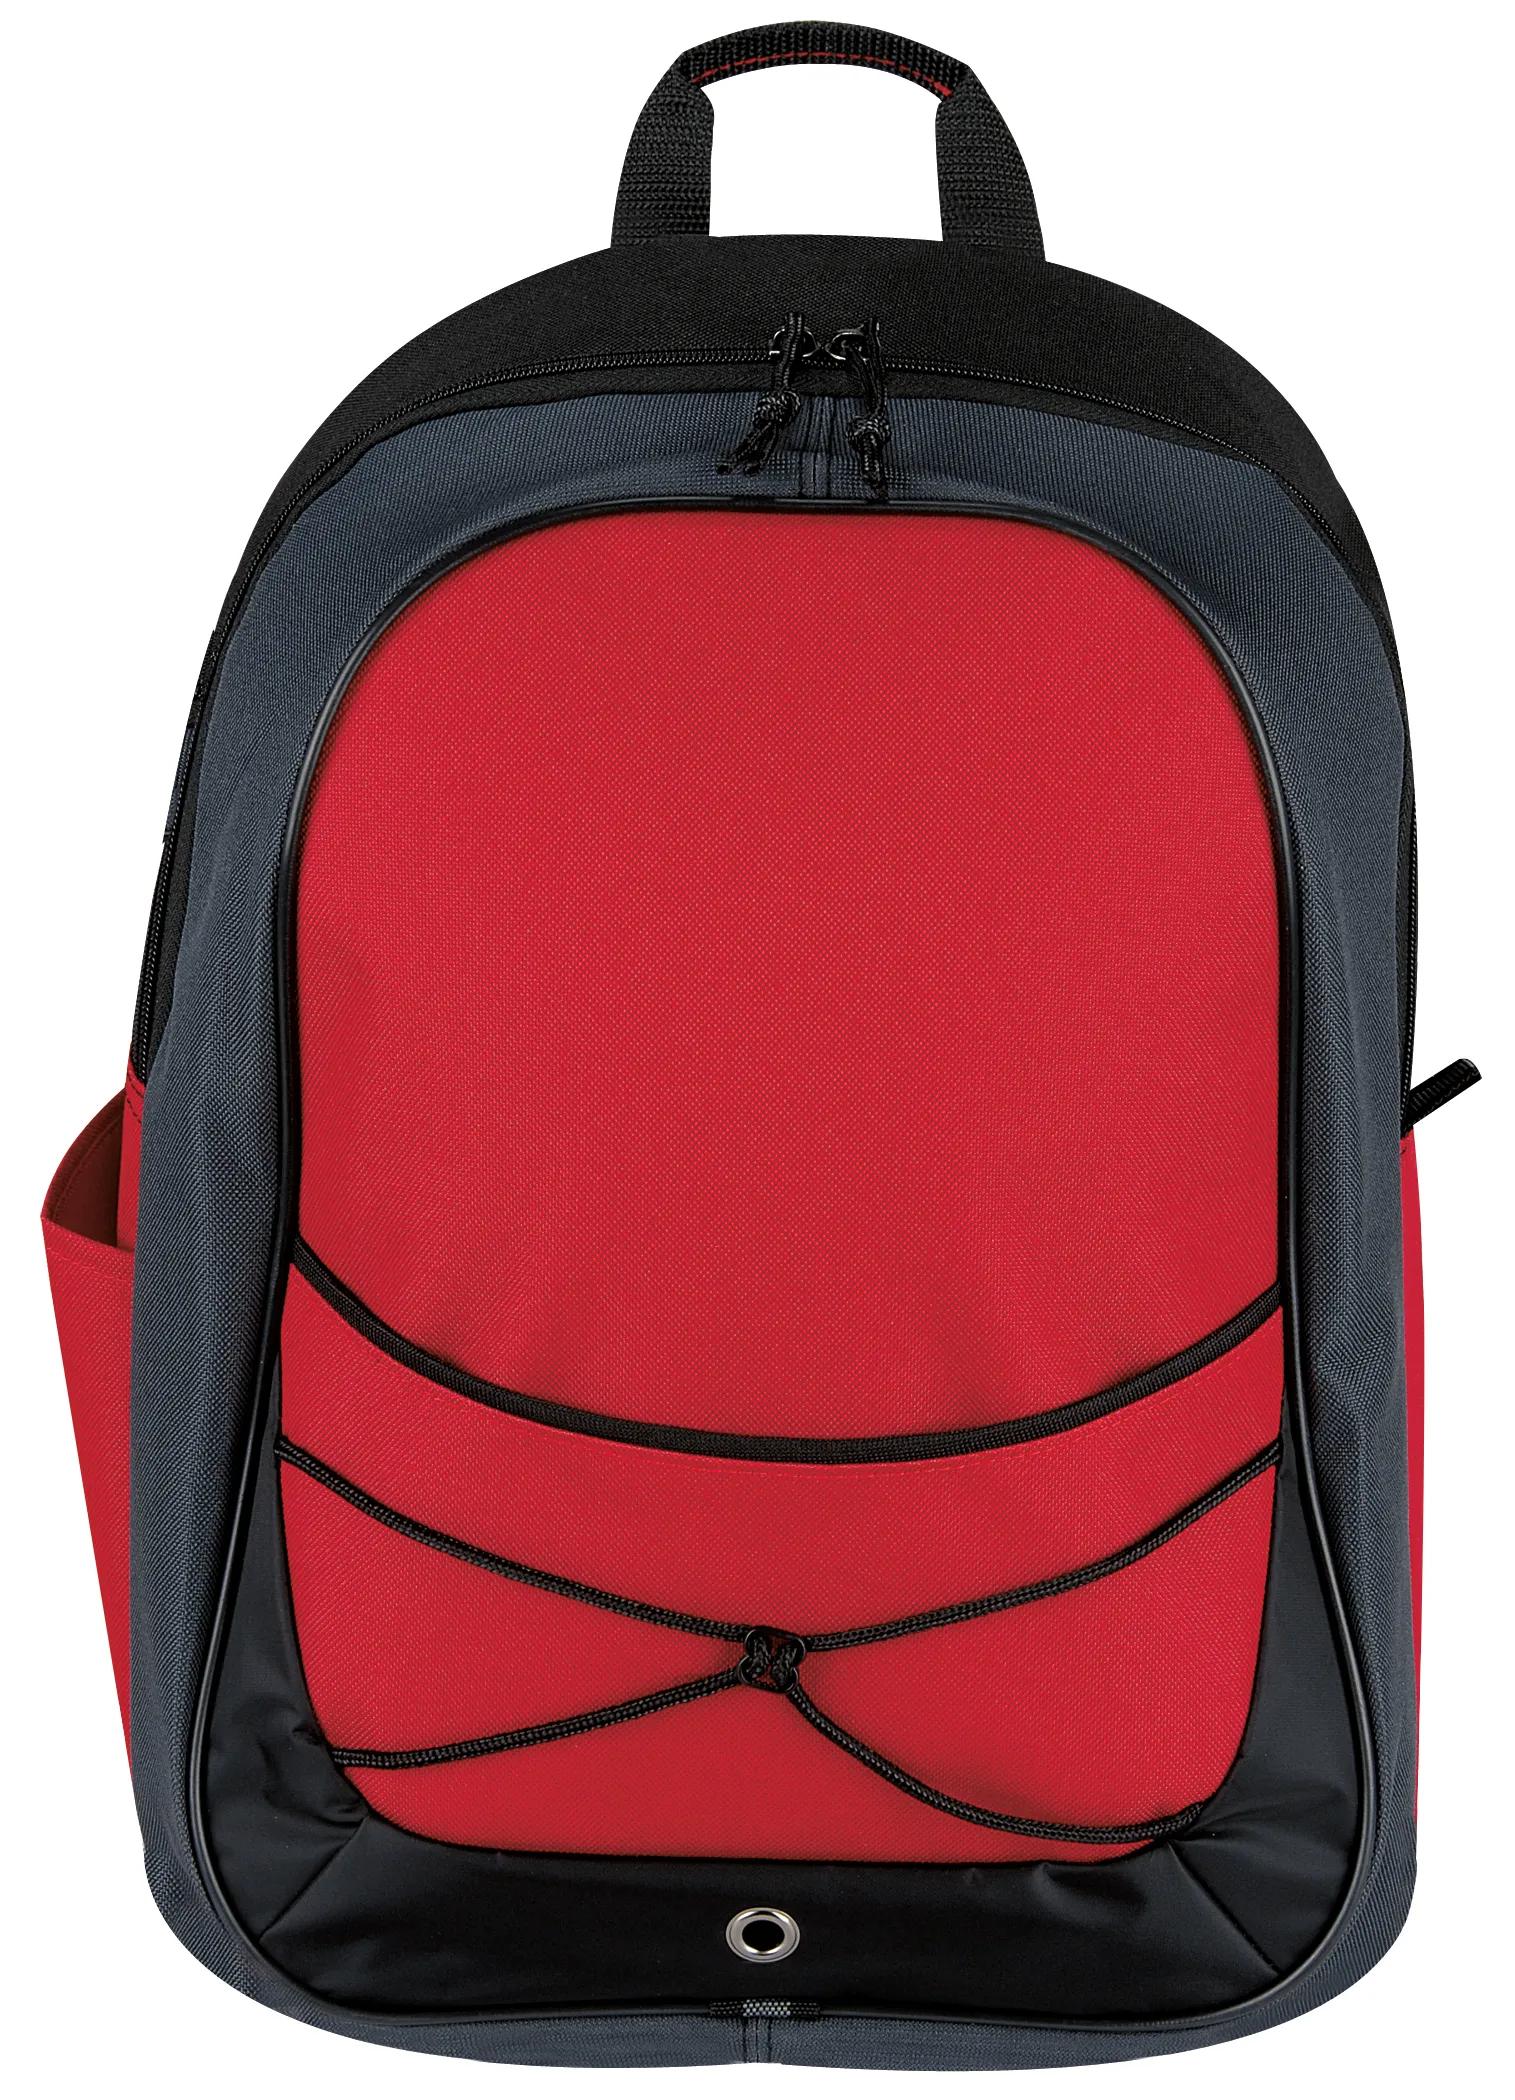 Tri-Tone Sport Backpack 3 of 8